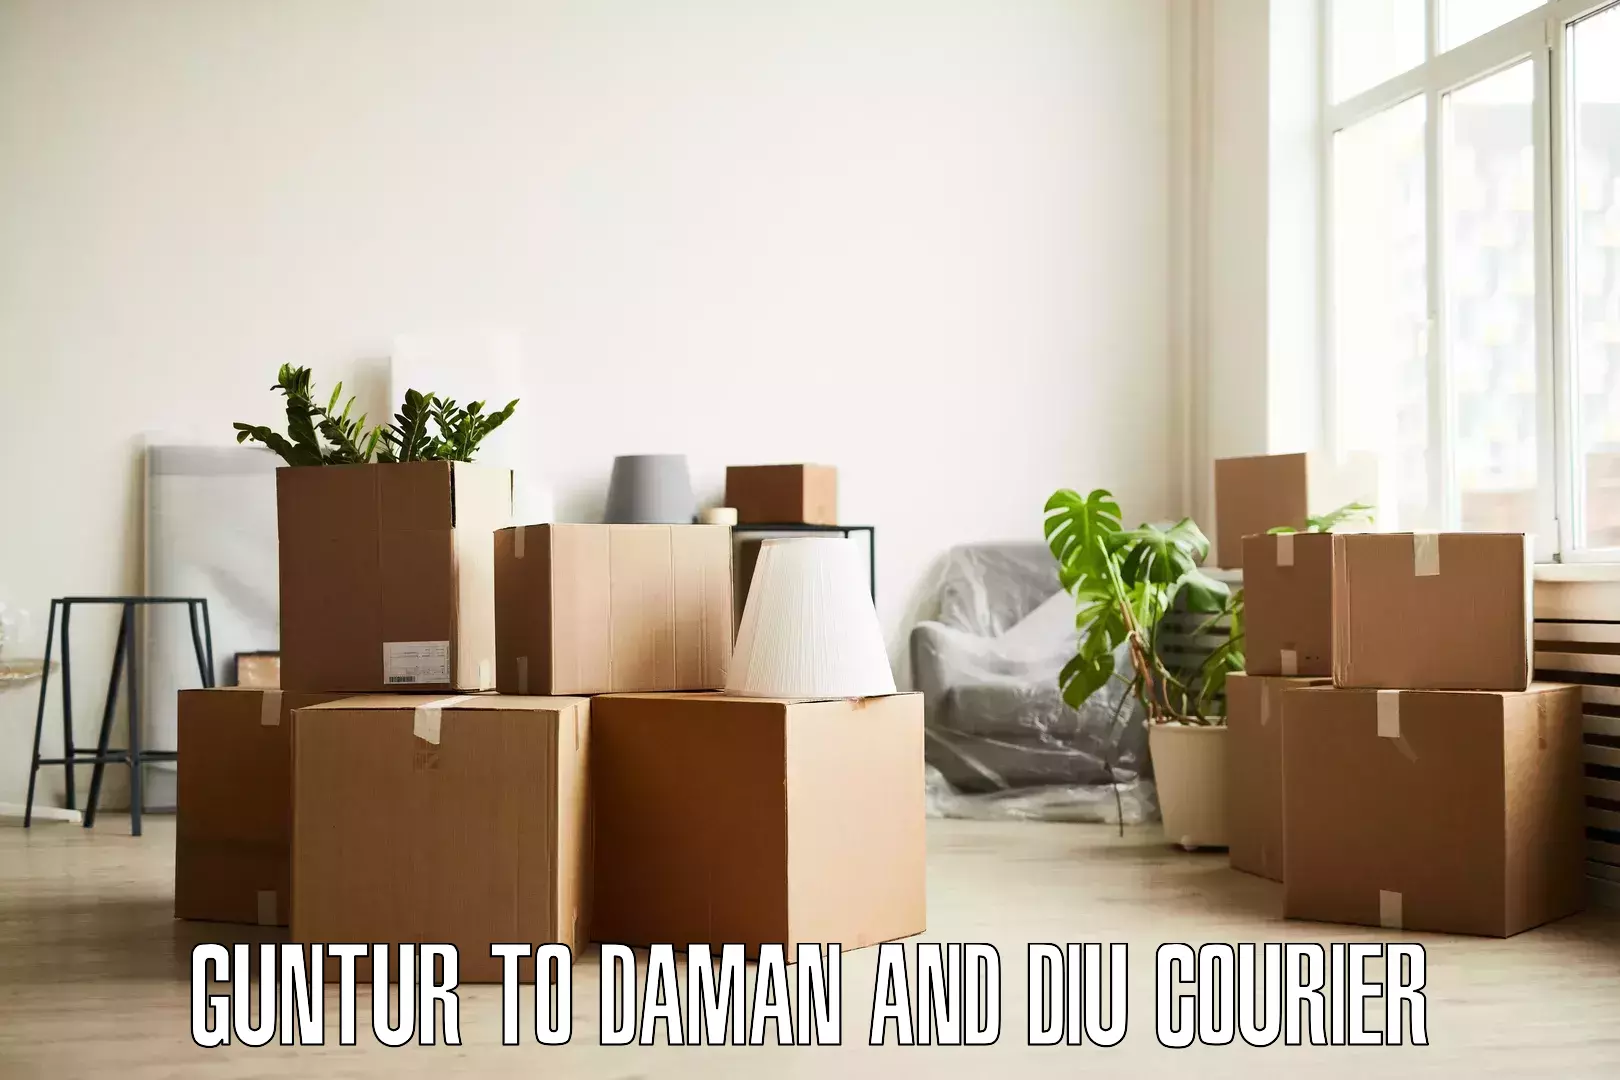 Furniture moving plans Guntur to Daman